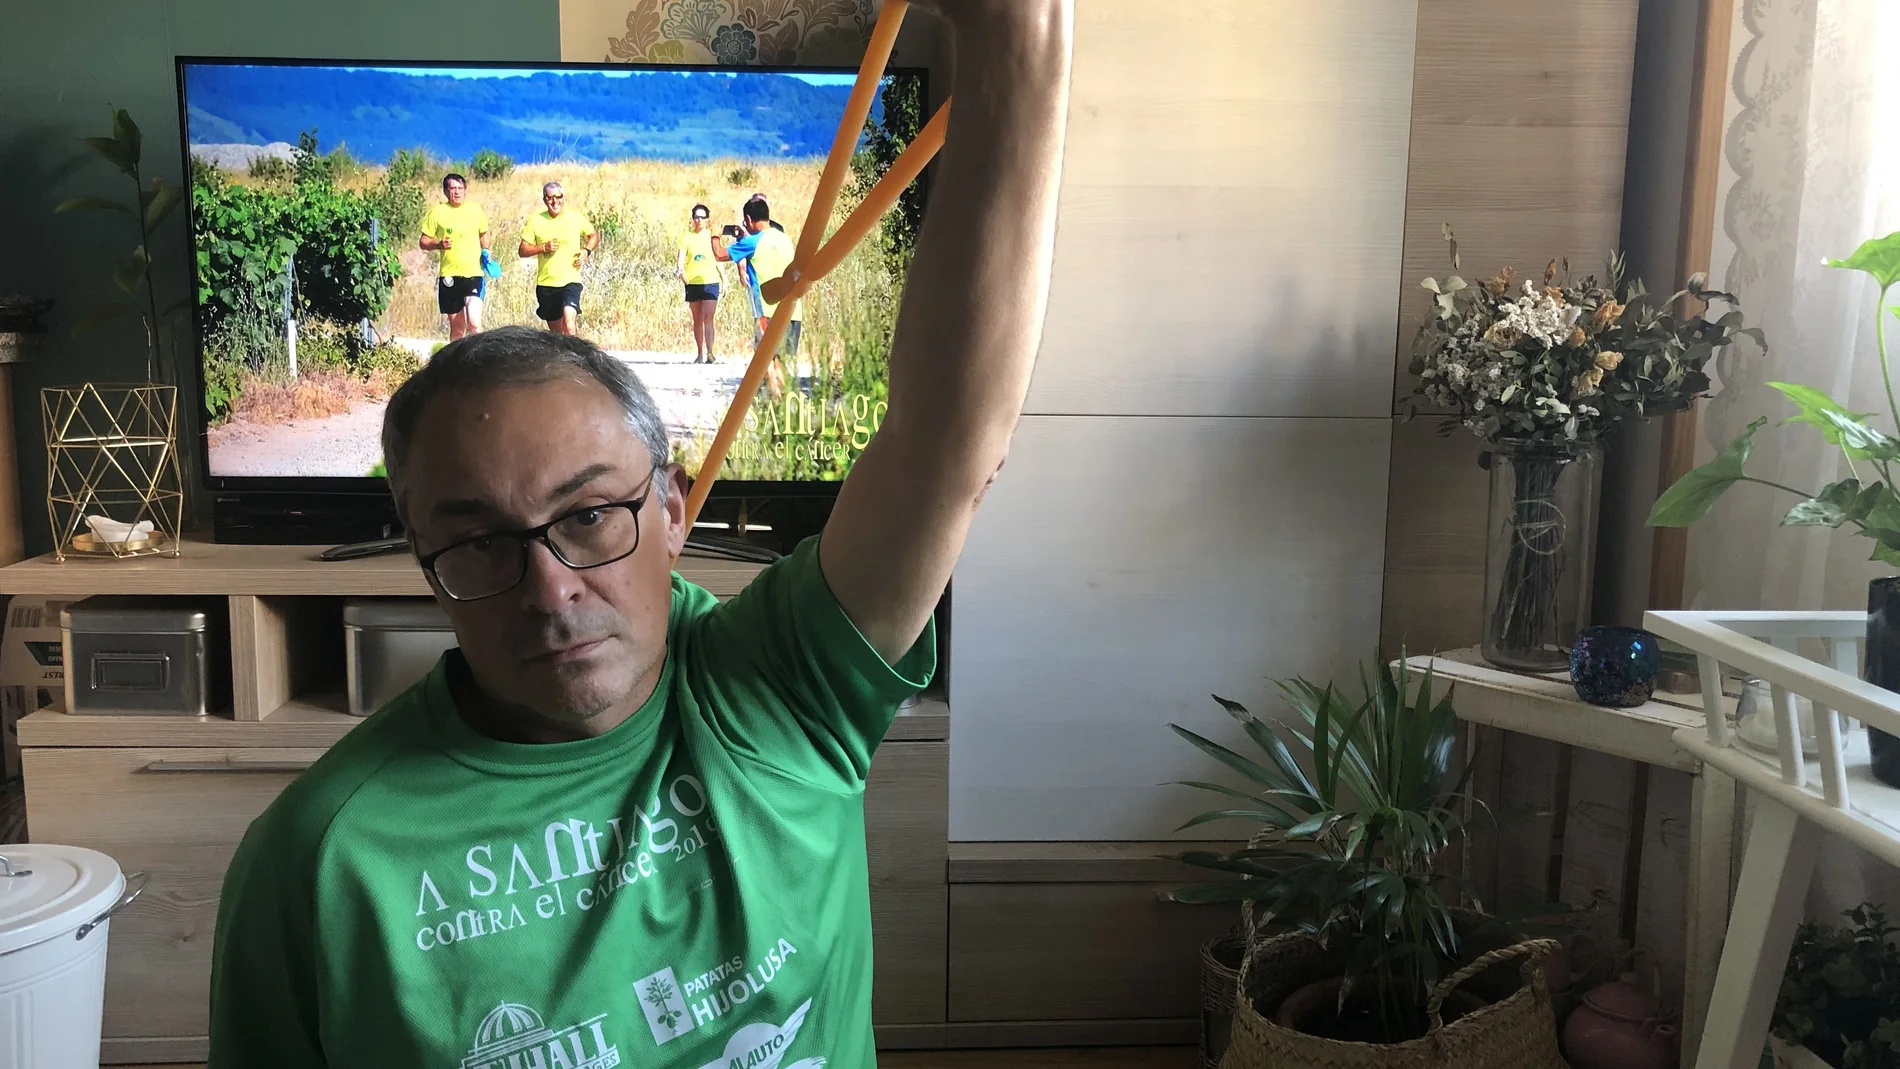 César Fernández Buitrón, uno de los impulsores de la iniciativa "A Santiago contra el cáncer", en su casa realizando ejercicios de acondicionamiento